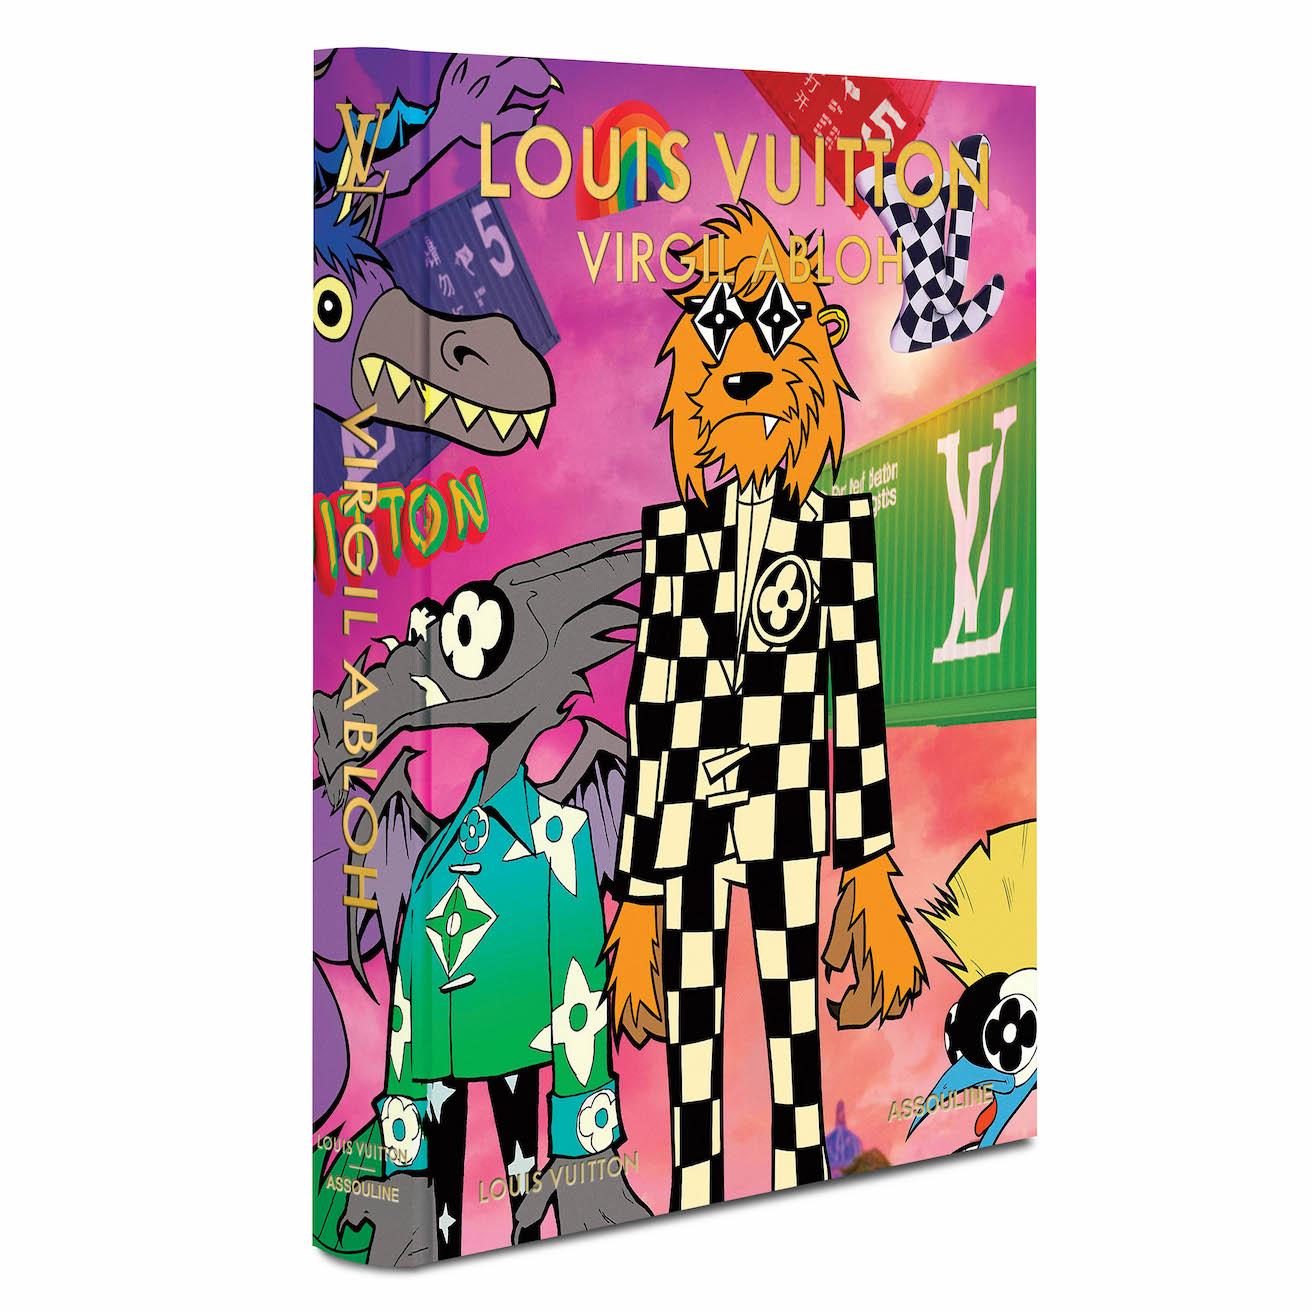 クラシック版のもう一つのアートワークは、アーティストのレジー・ノウが2021年春夏メンズコレクションのために書き下ろした《The Adventures of Zooom with Friends（ズームと仲間たちの冒険）》のカートゥーンアートワーク。